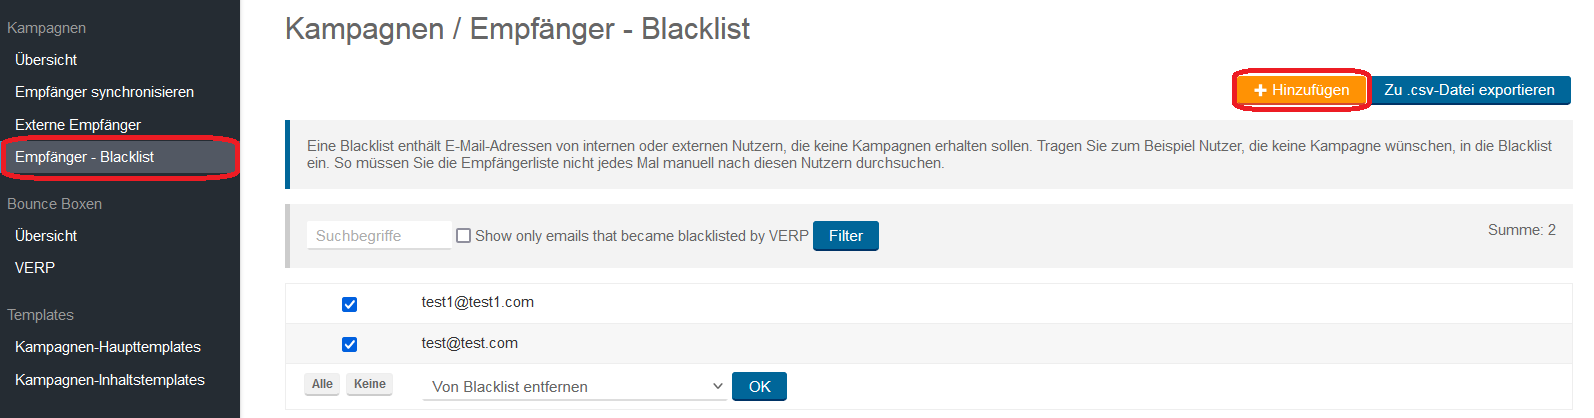 Kampagnen Empfänger Blacklist 3